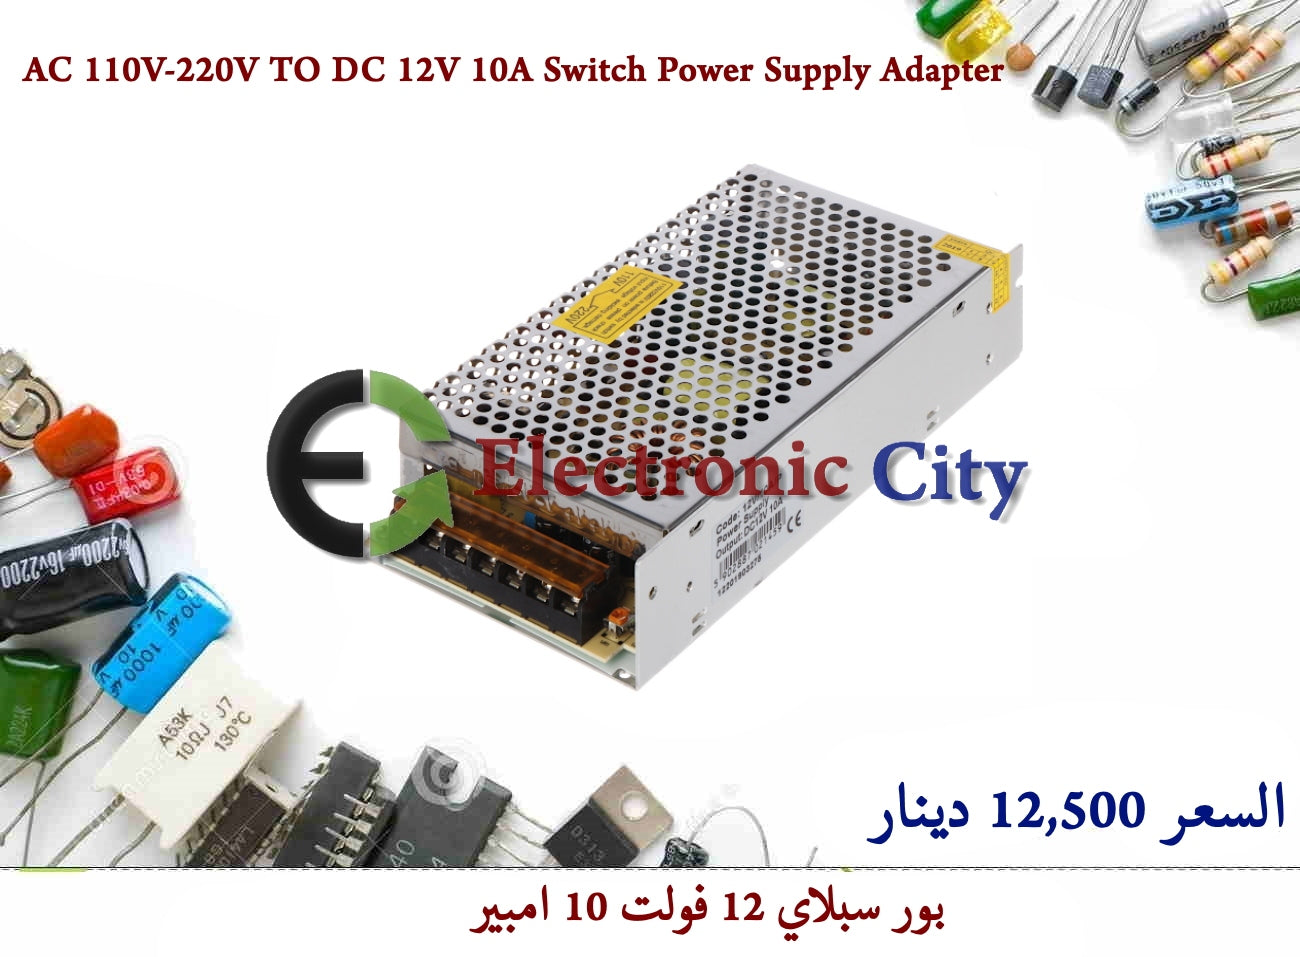 AC 110V-220V TO DC 12V 10A Switch Power Supply Adapter